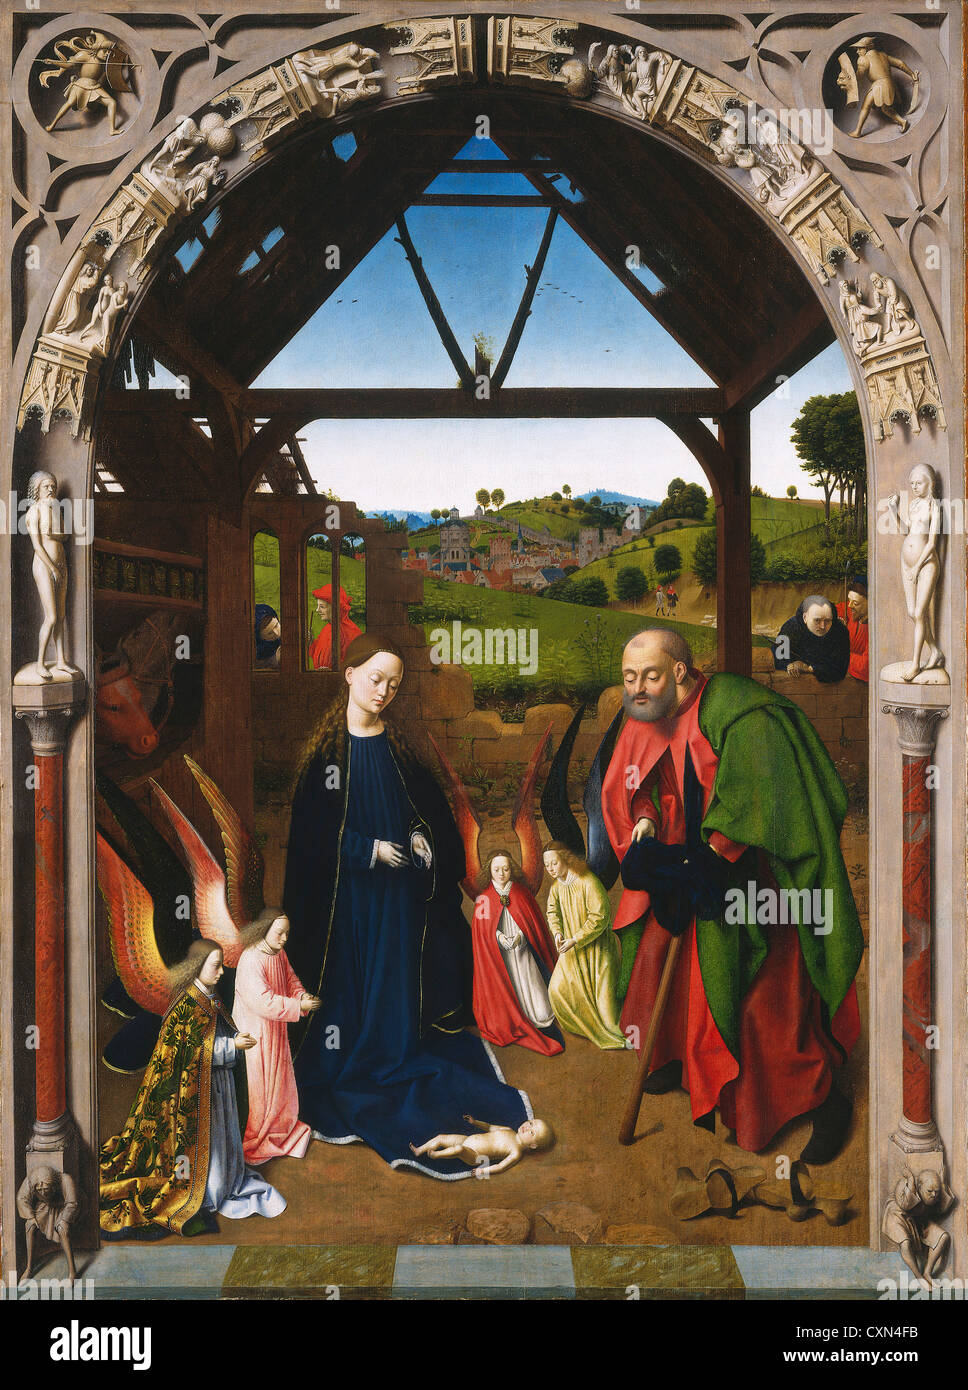 Petrus Christus, la Nativité, active, Russisch 1444 - 1475/1476, ch. 1450, huile sur panneau Banque D'Images